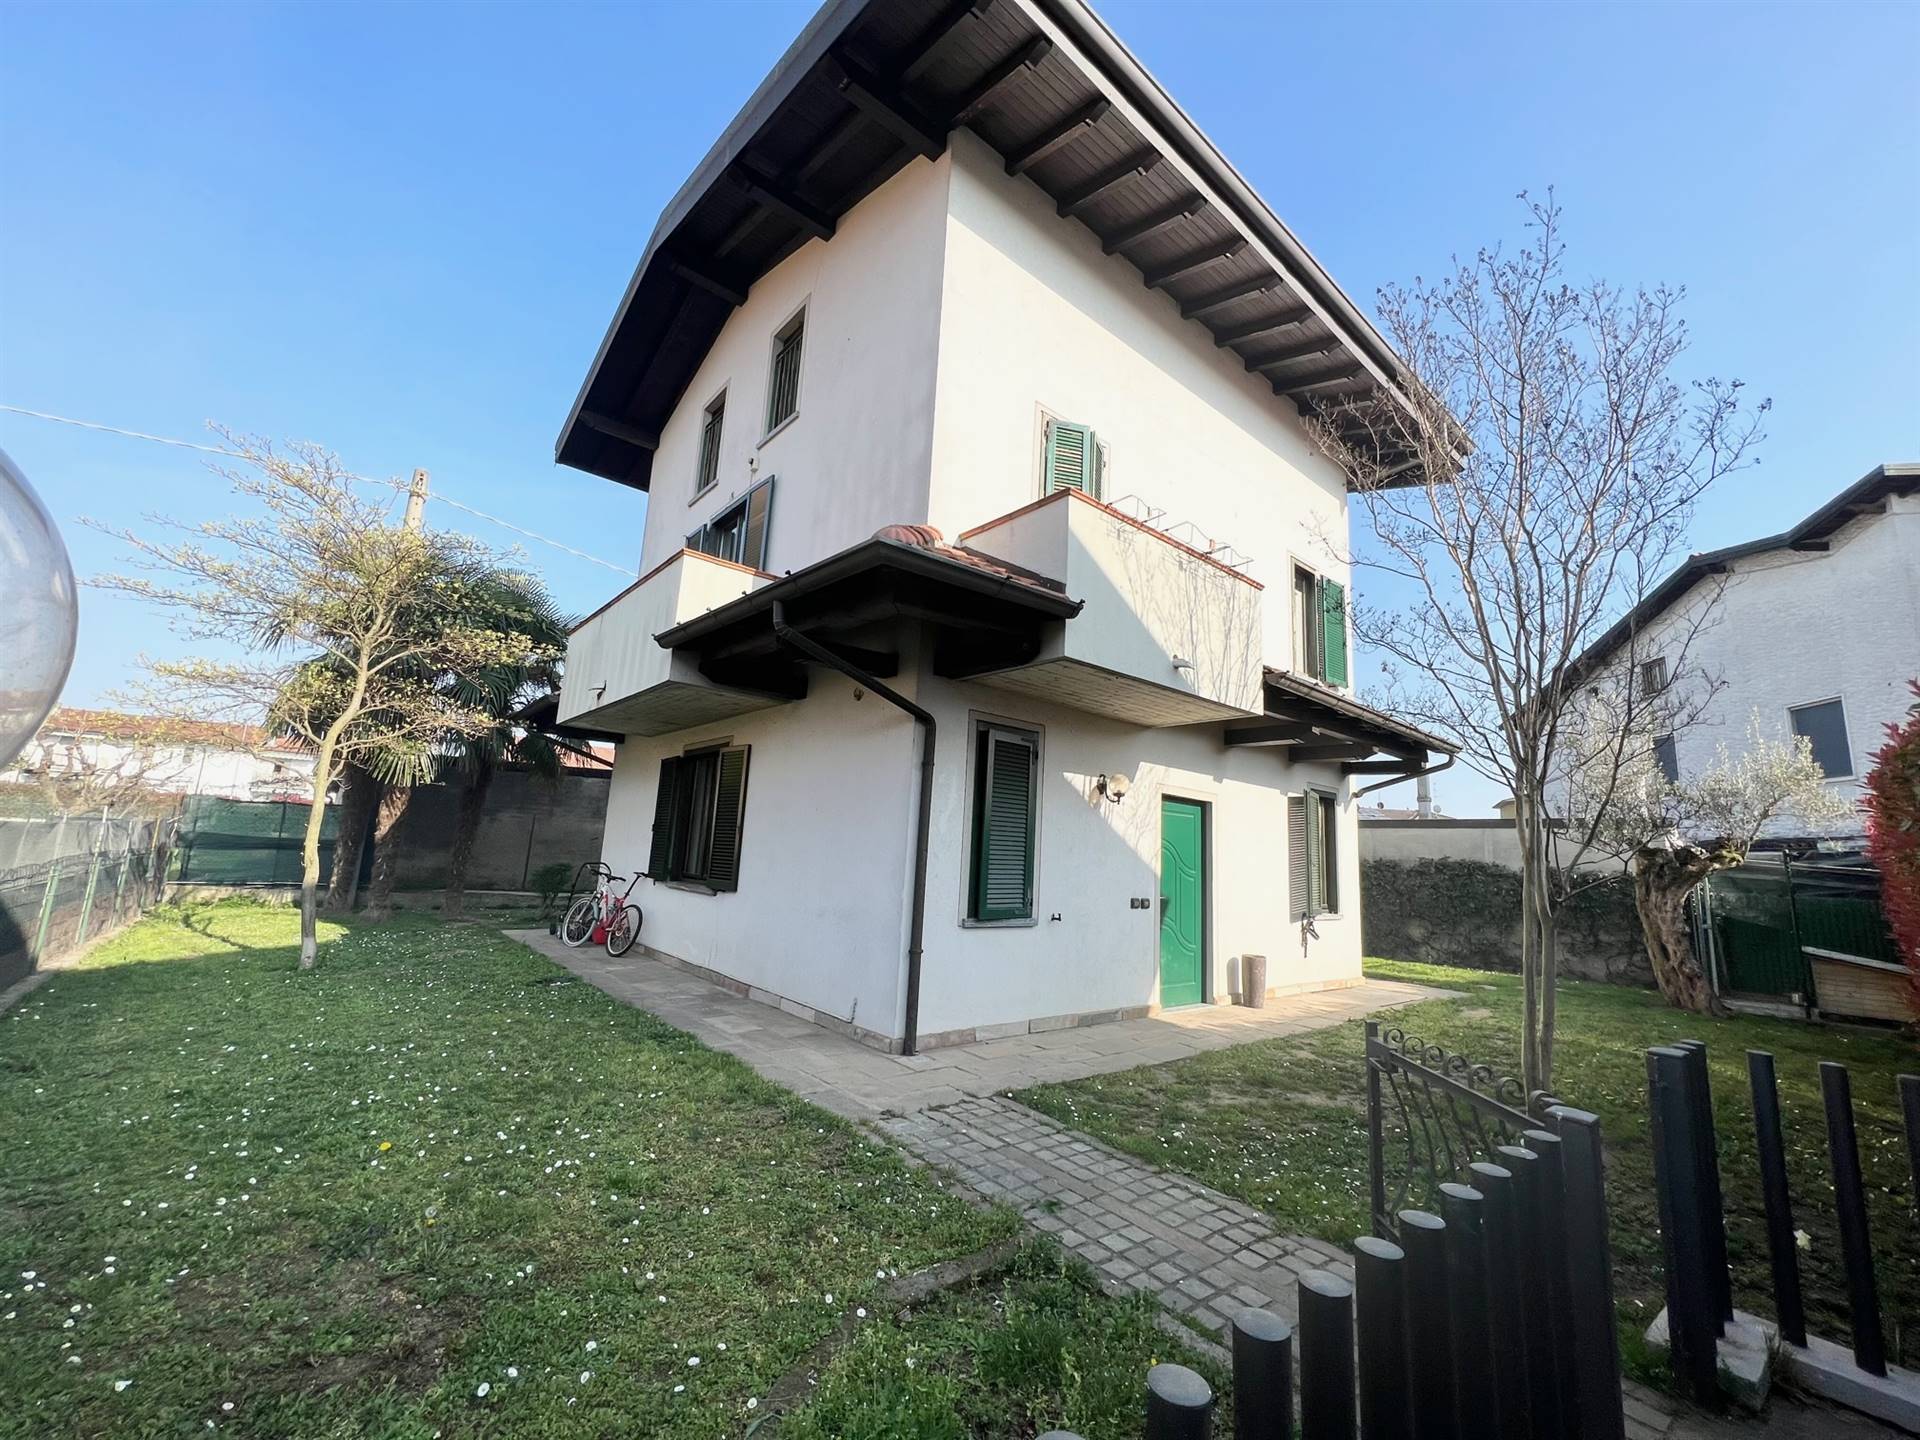 Villa in vendita a Cologno al Serio, 5 locali, prezzo € 295.000 | PortaleAgenzieImmobiliari.it